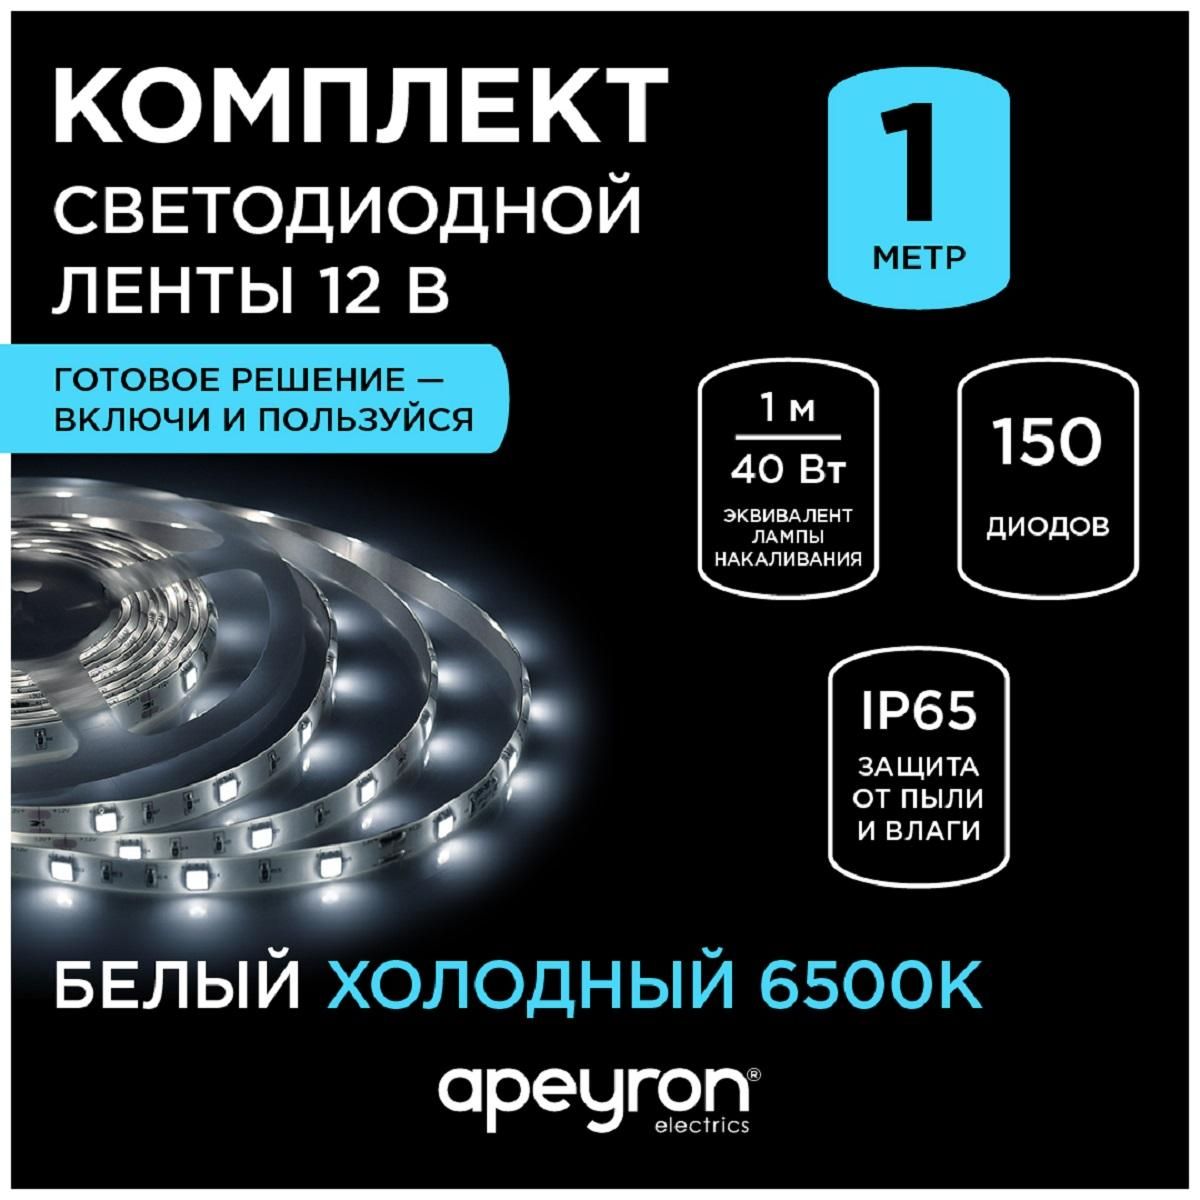 Комплект светодиодной ленты с аксессуарами smd5050 30д/м 12В 6500K IP65 5м Apeyron - Фото 8